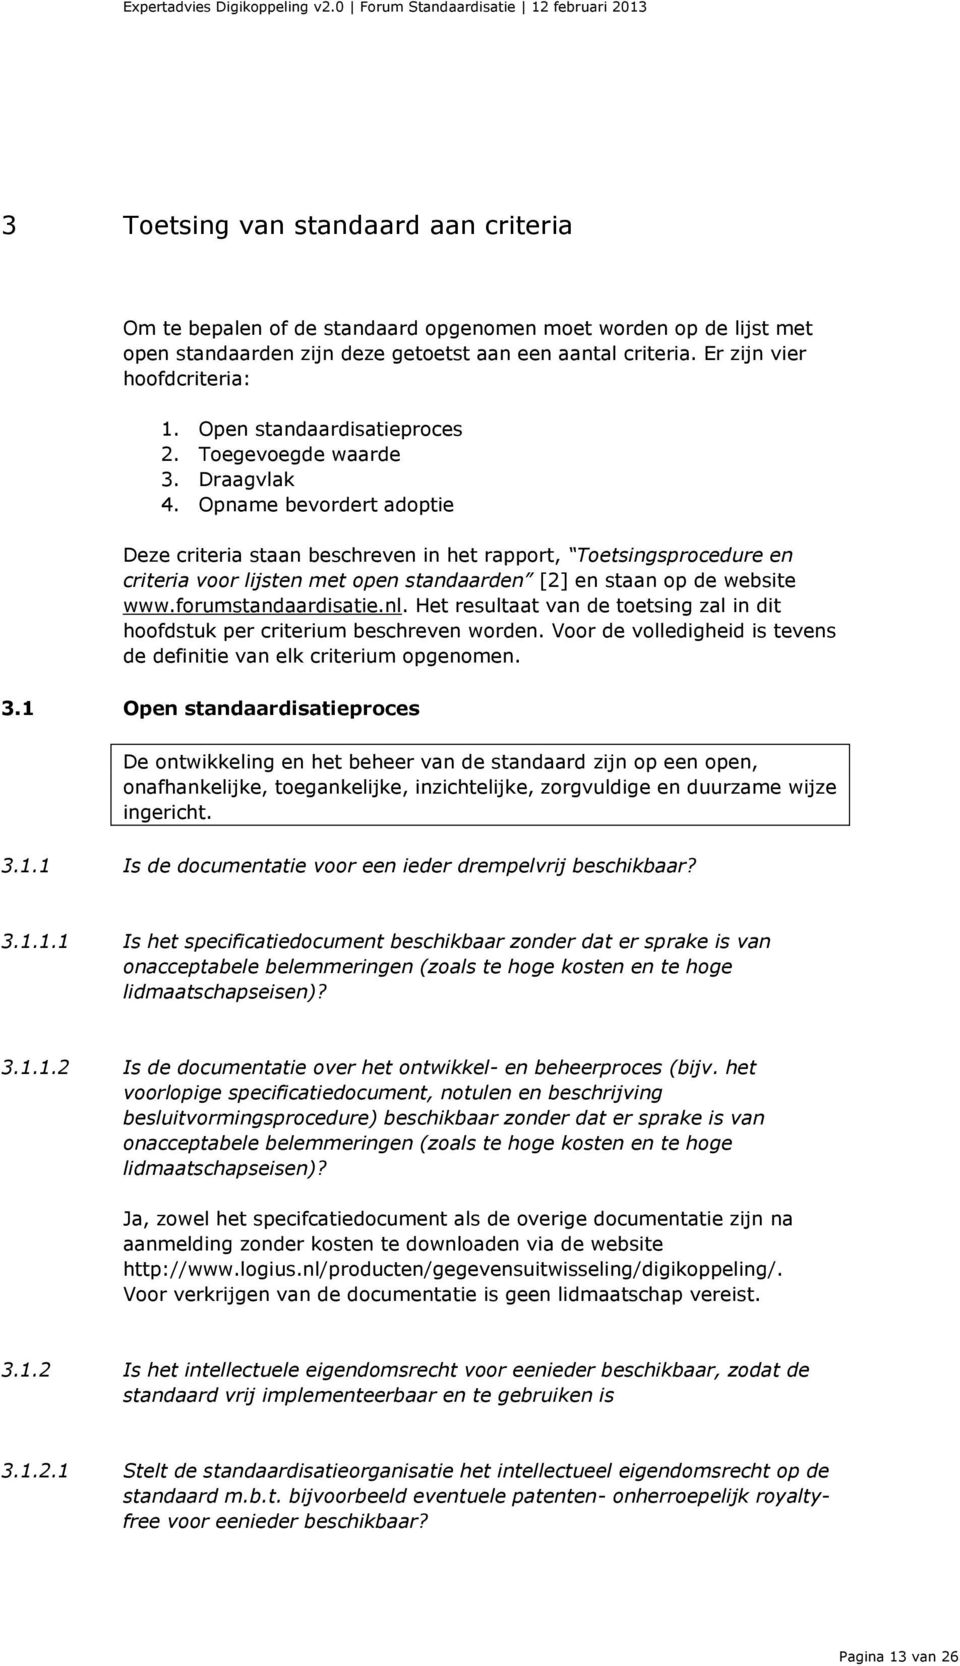 Opname bevordert adoptie Deze criteria staan beschreven in het rapport, Toetsingsprocedure en criteria voor lijsten met open standaarden [2] en staan op de website www.forumstandaardisatie.nl.